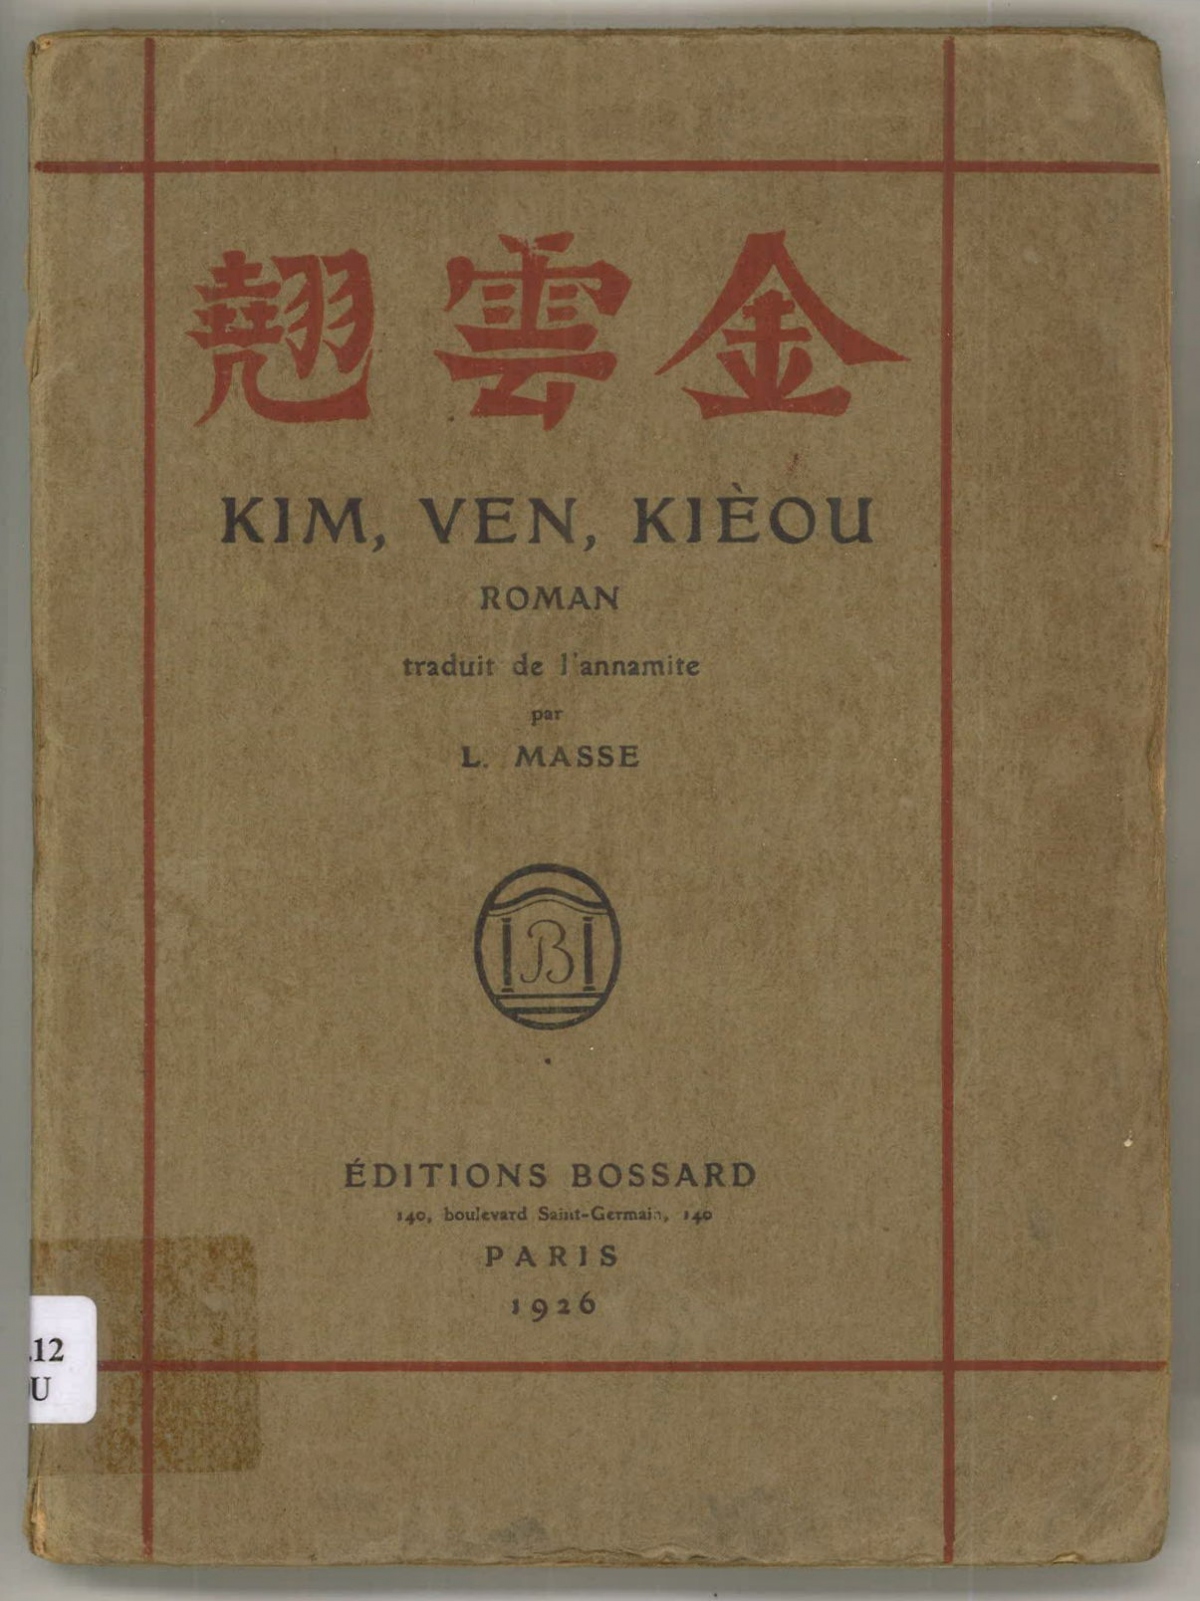 Truyện "Kim Vân Kiều" xuất bản năm 1926 tại Pháp.